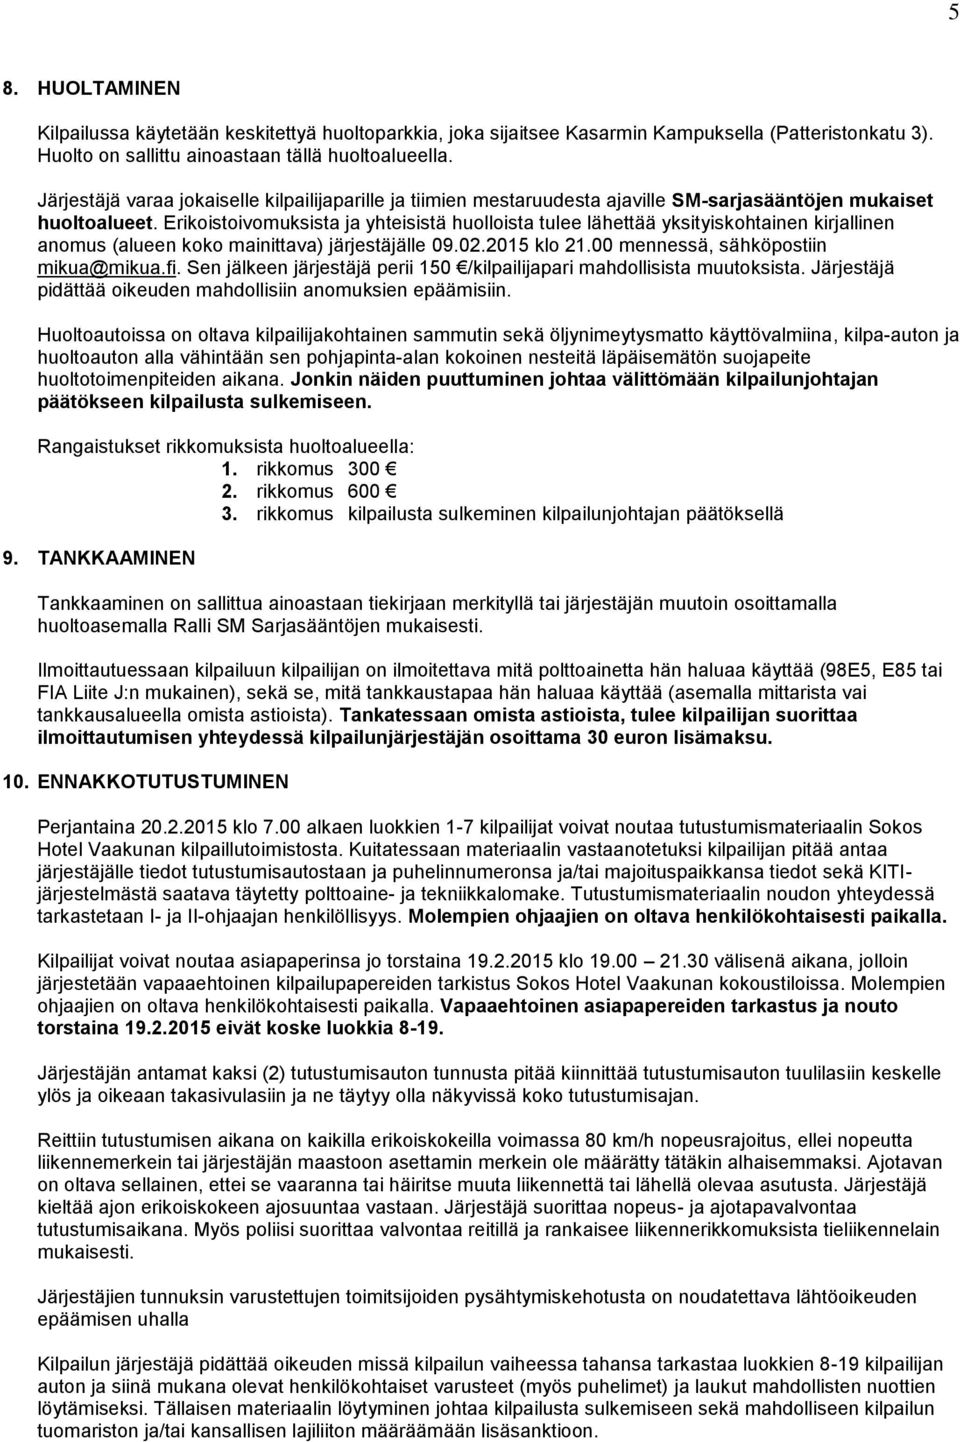 Erikoistoivomuksista ja yhteisistä huolloista tulee lähettää yksityiskohtainen kirjallinen anomus (alueen koko mainittava) järjestäjälle 09.02.2015 klo 21.00 mennessä, sähköpostiin mikua@mikua.fi.